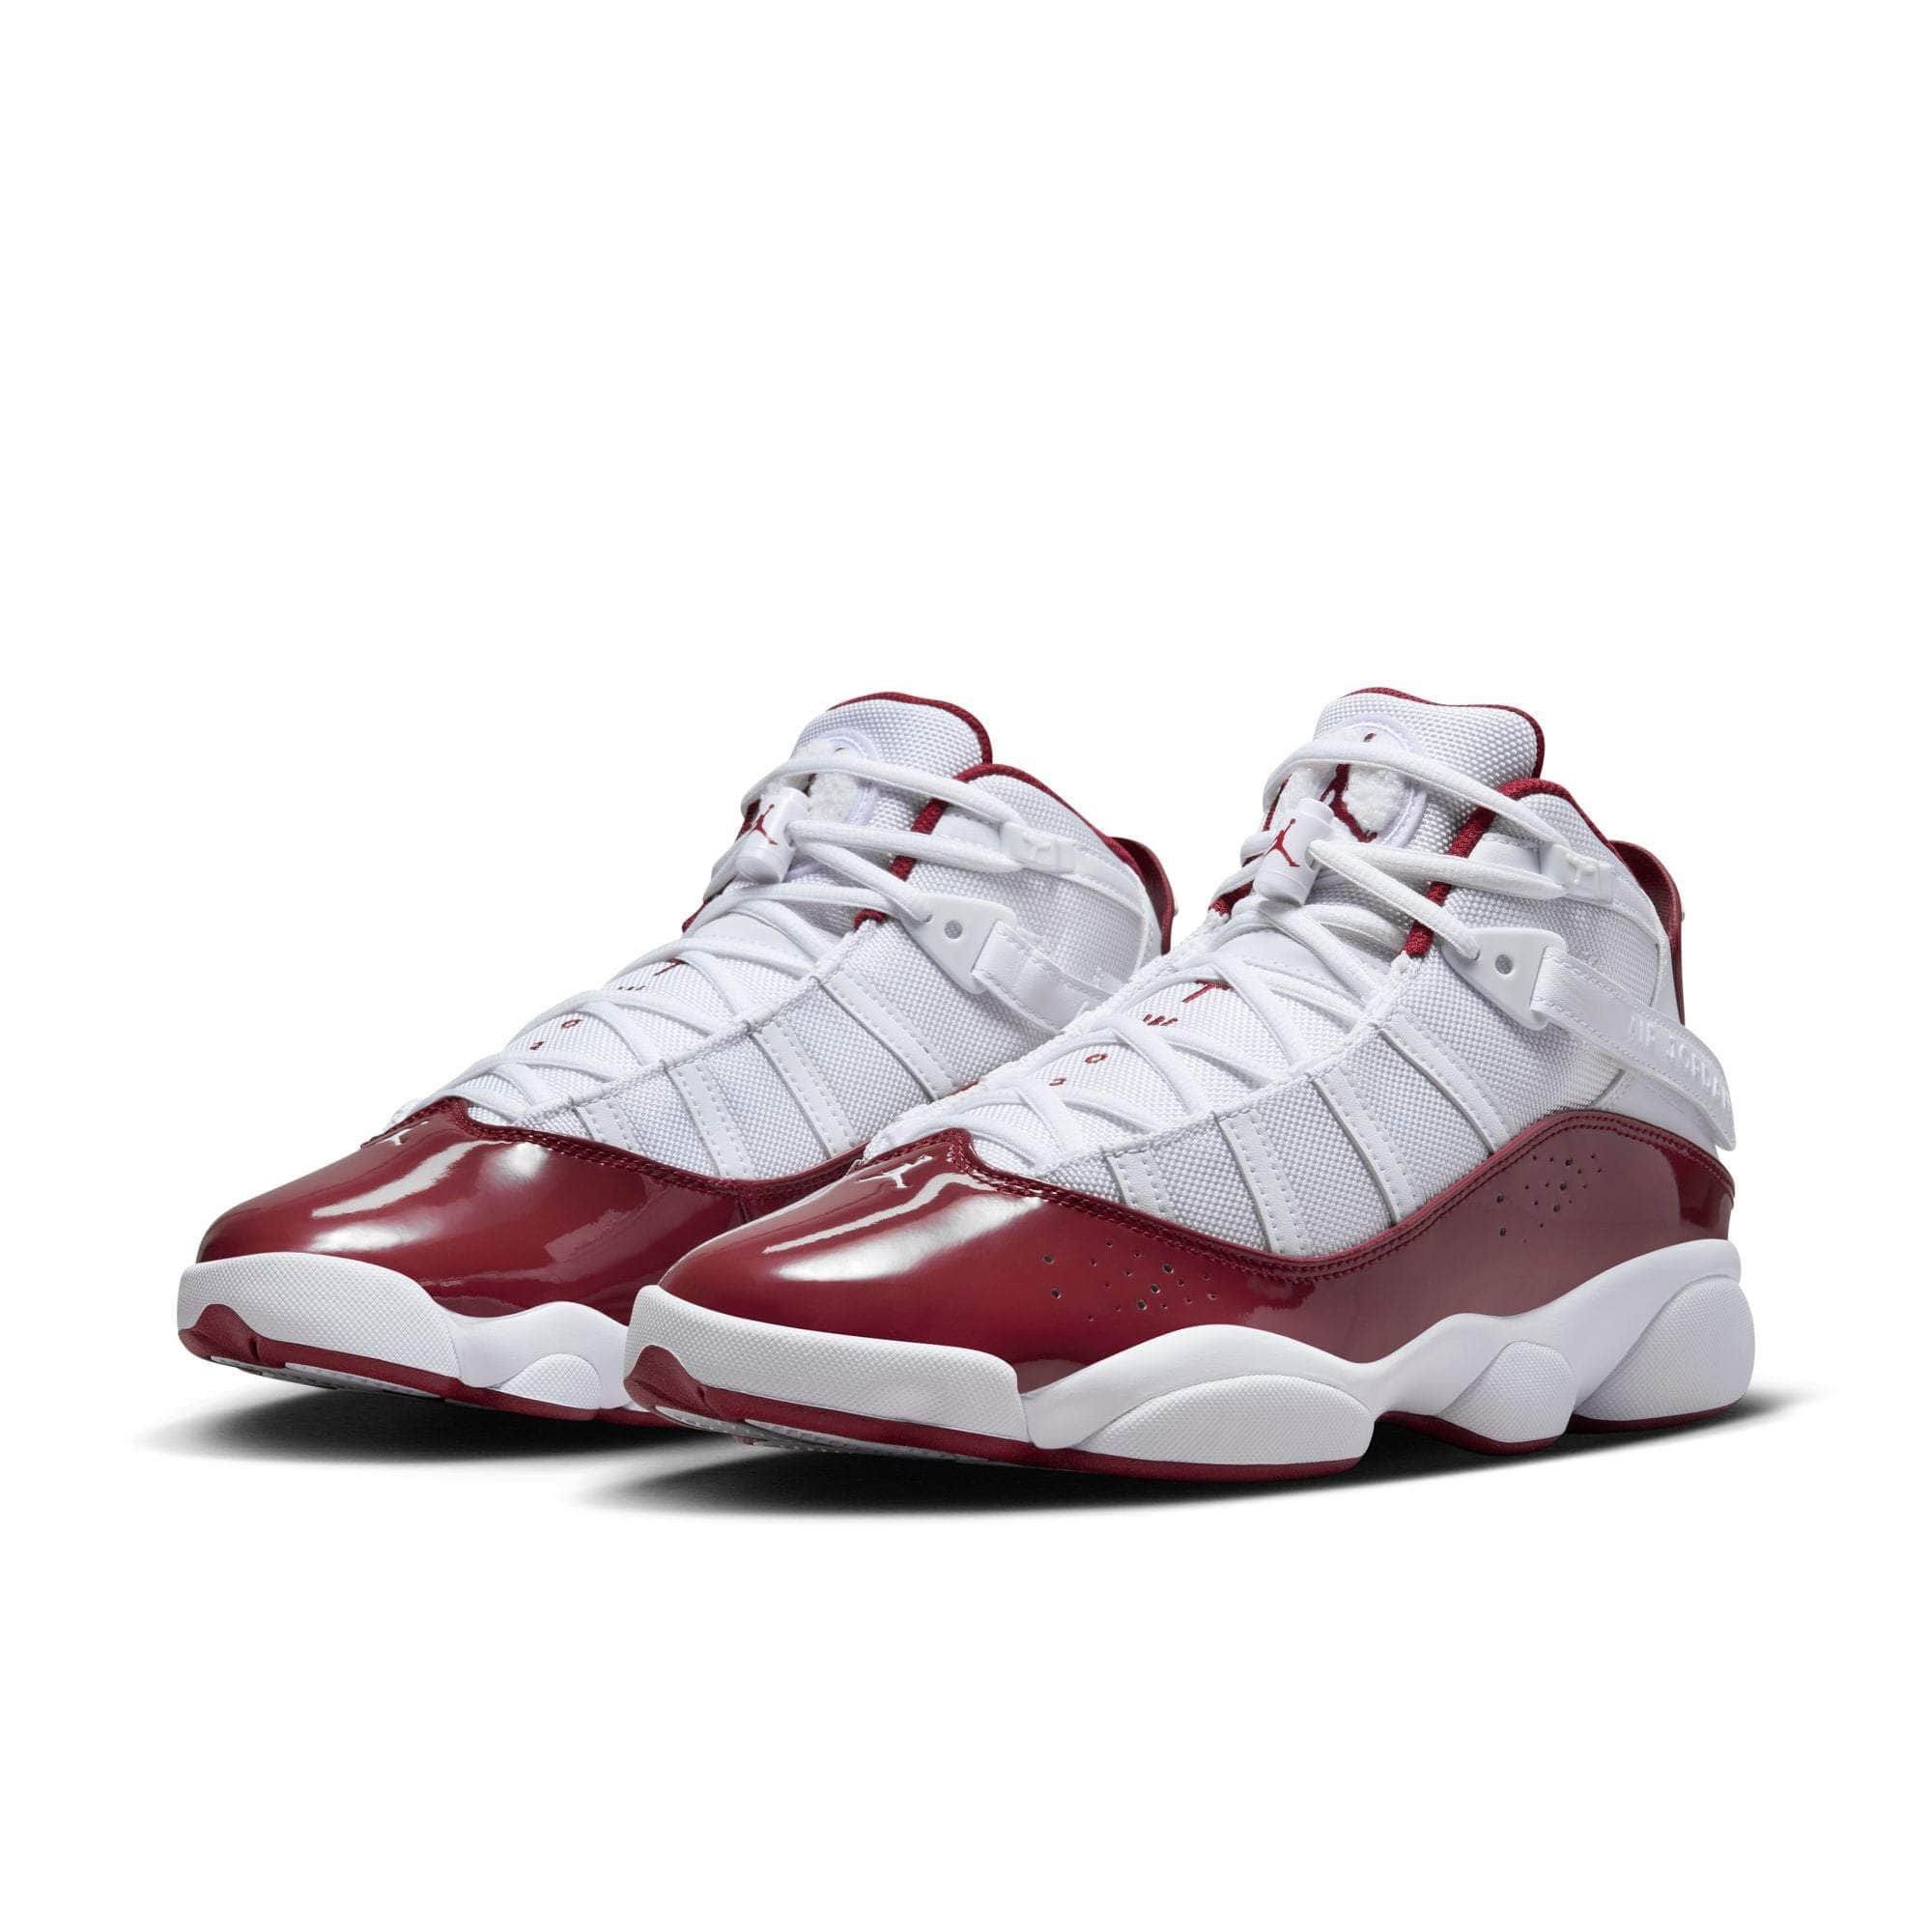 Air Jordan Footwear Air Jordan 6 Rings "Team Red" - Men's